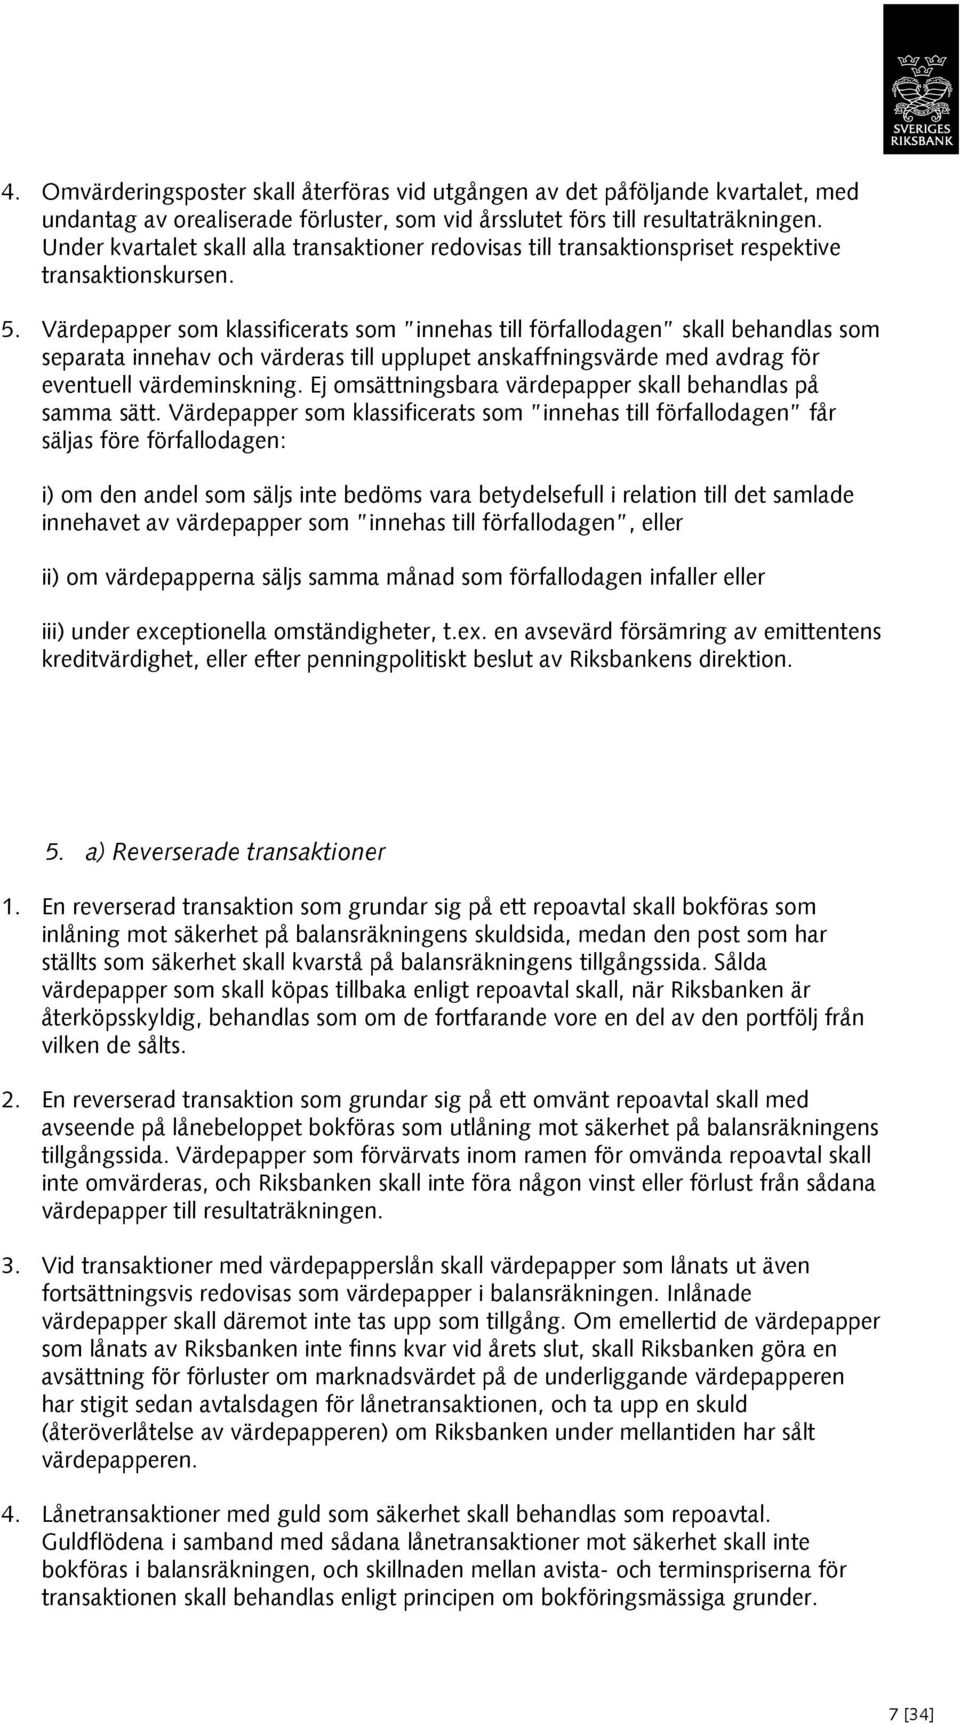 Regler för bokföring och årsredovisning i Sveriges riksbank - PDF ...